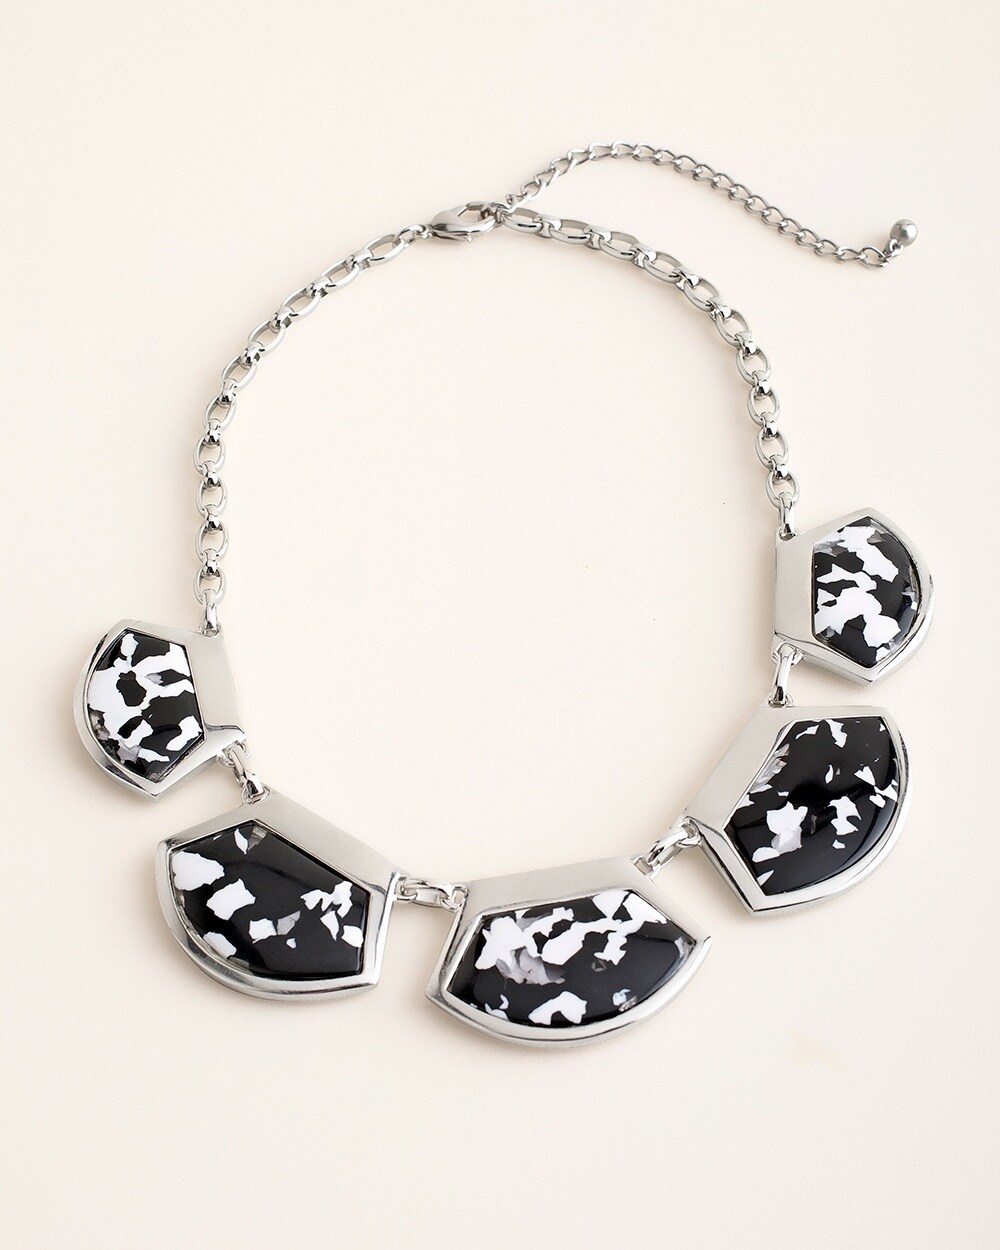 Reversible Black and White Artisan Bib Necklace